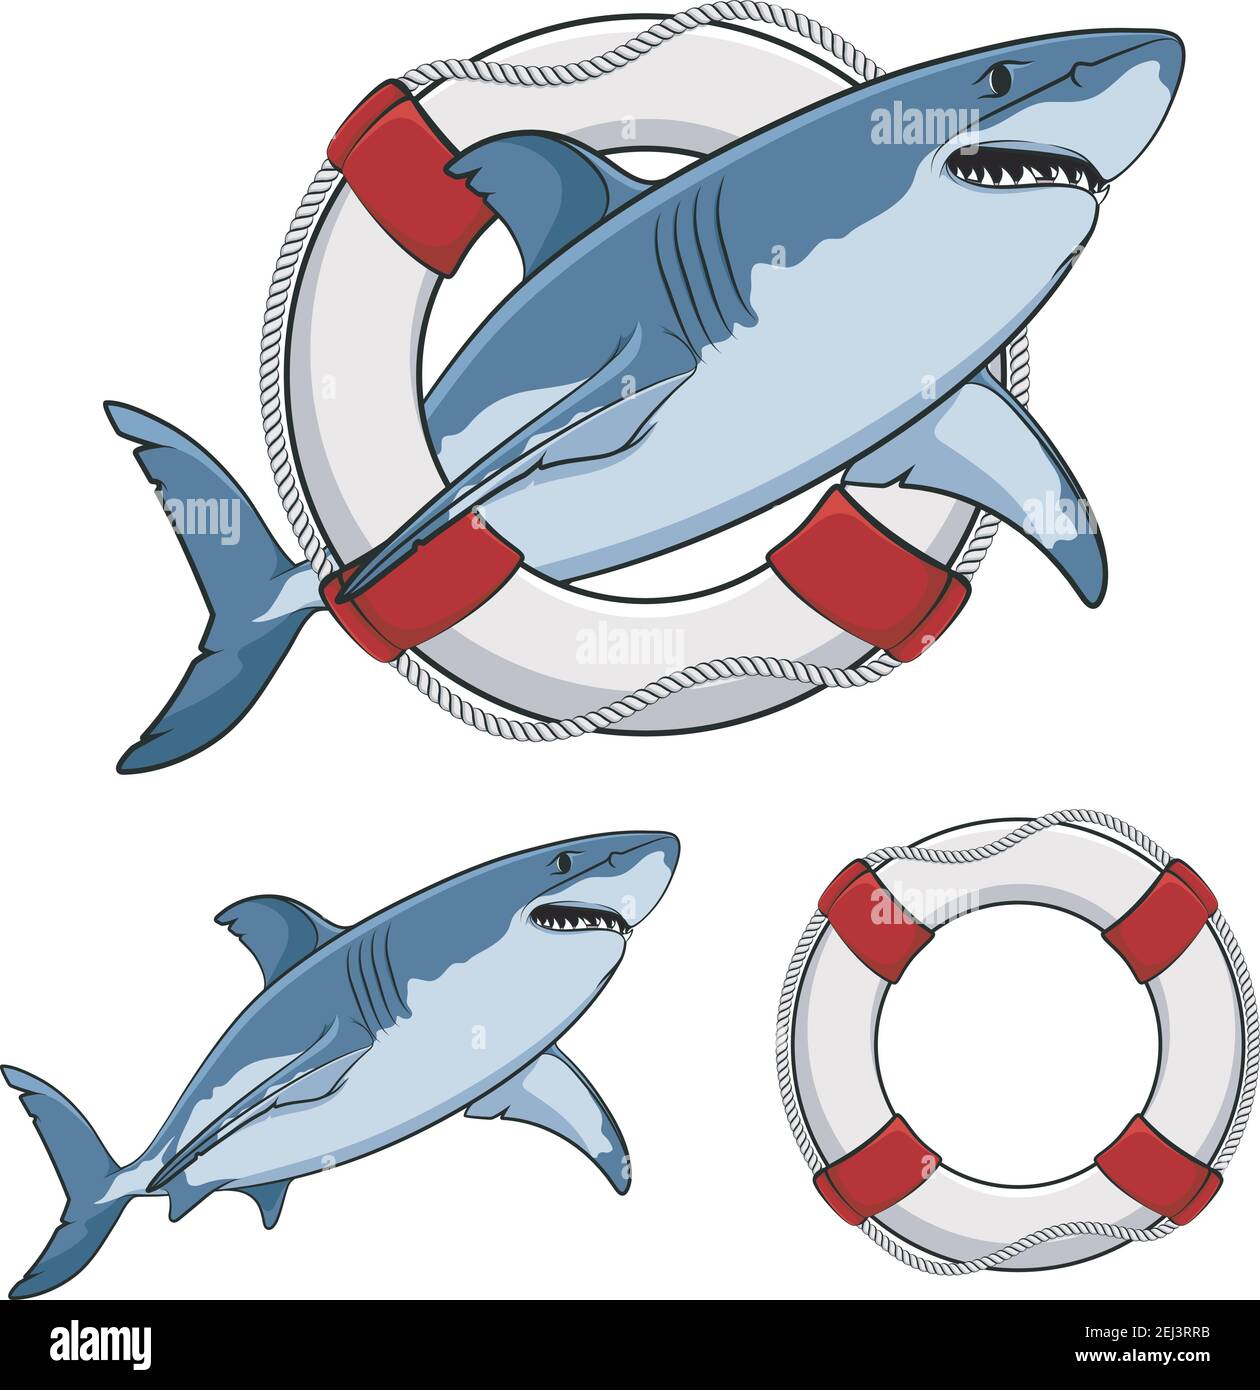 Farbbild weißer Hai und eine Rettungsboje. Vektor isolierte Objekte auf weiß. Stock Vektor